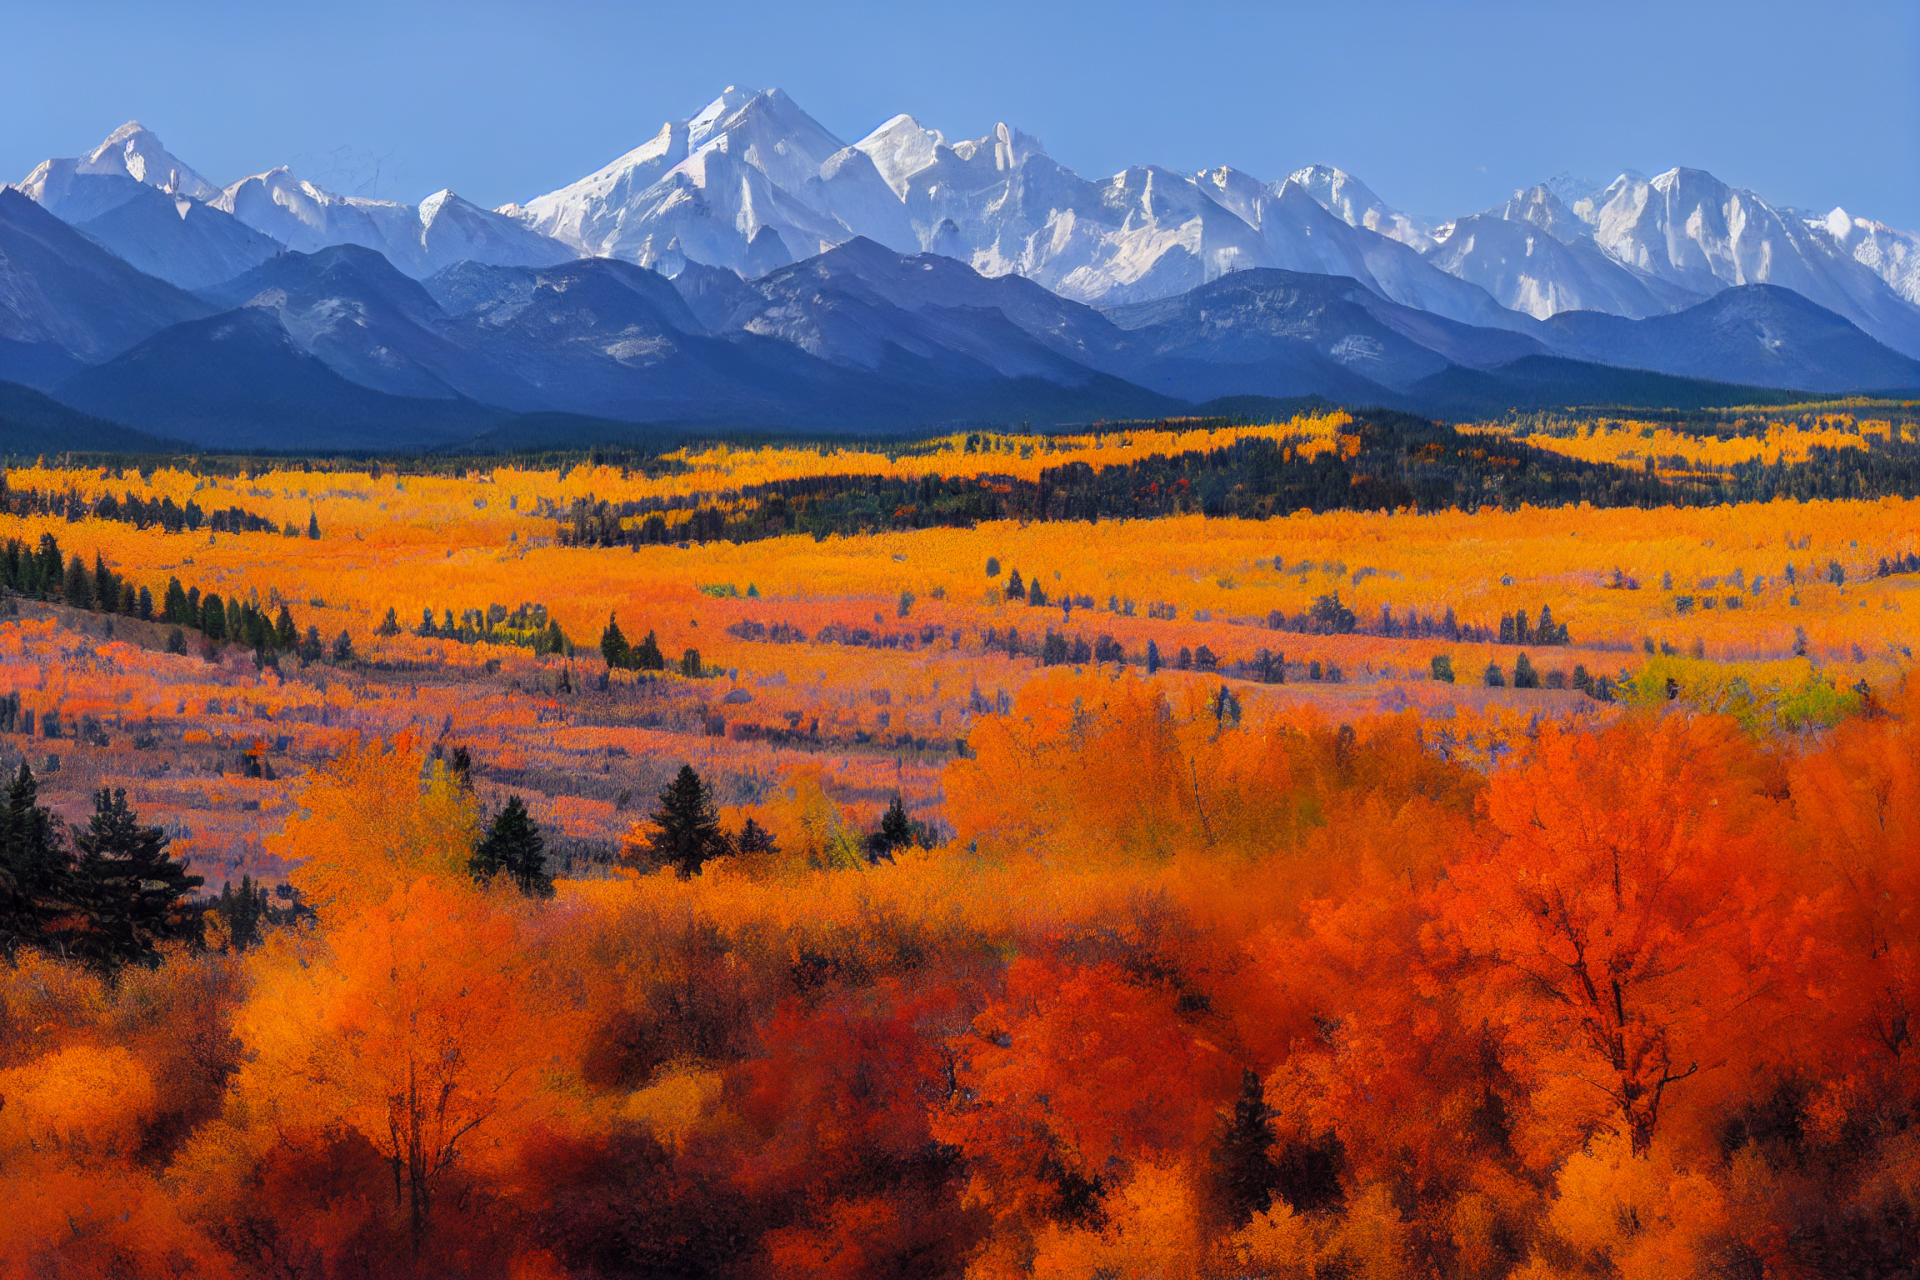 Download Stunning Colorado Rockies Mountain Range Wallpaper